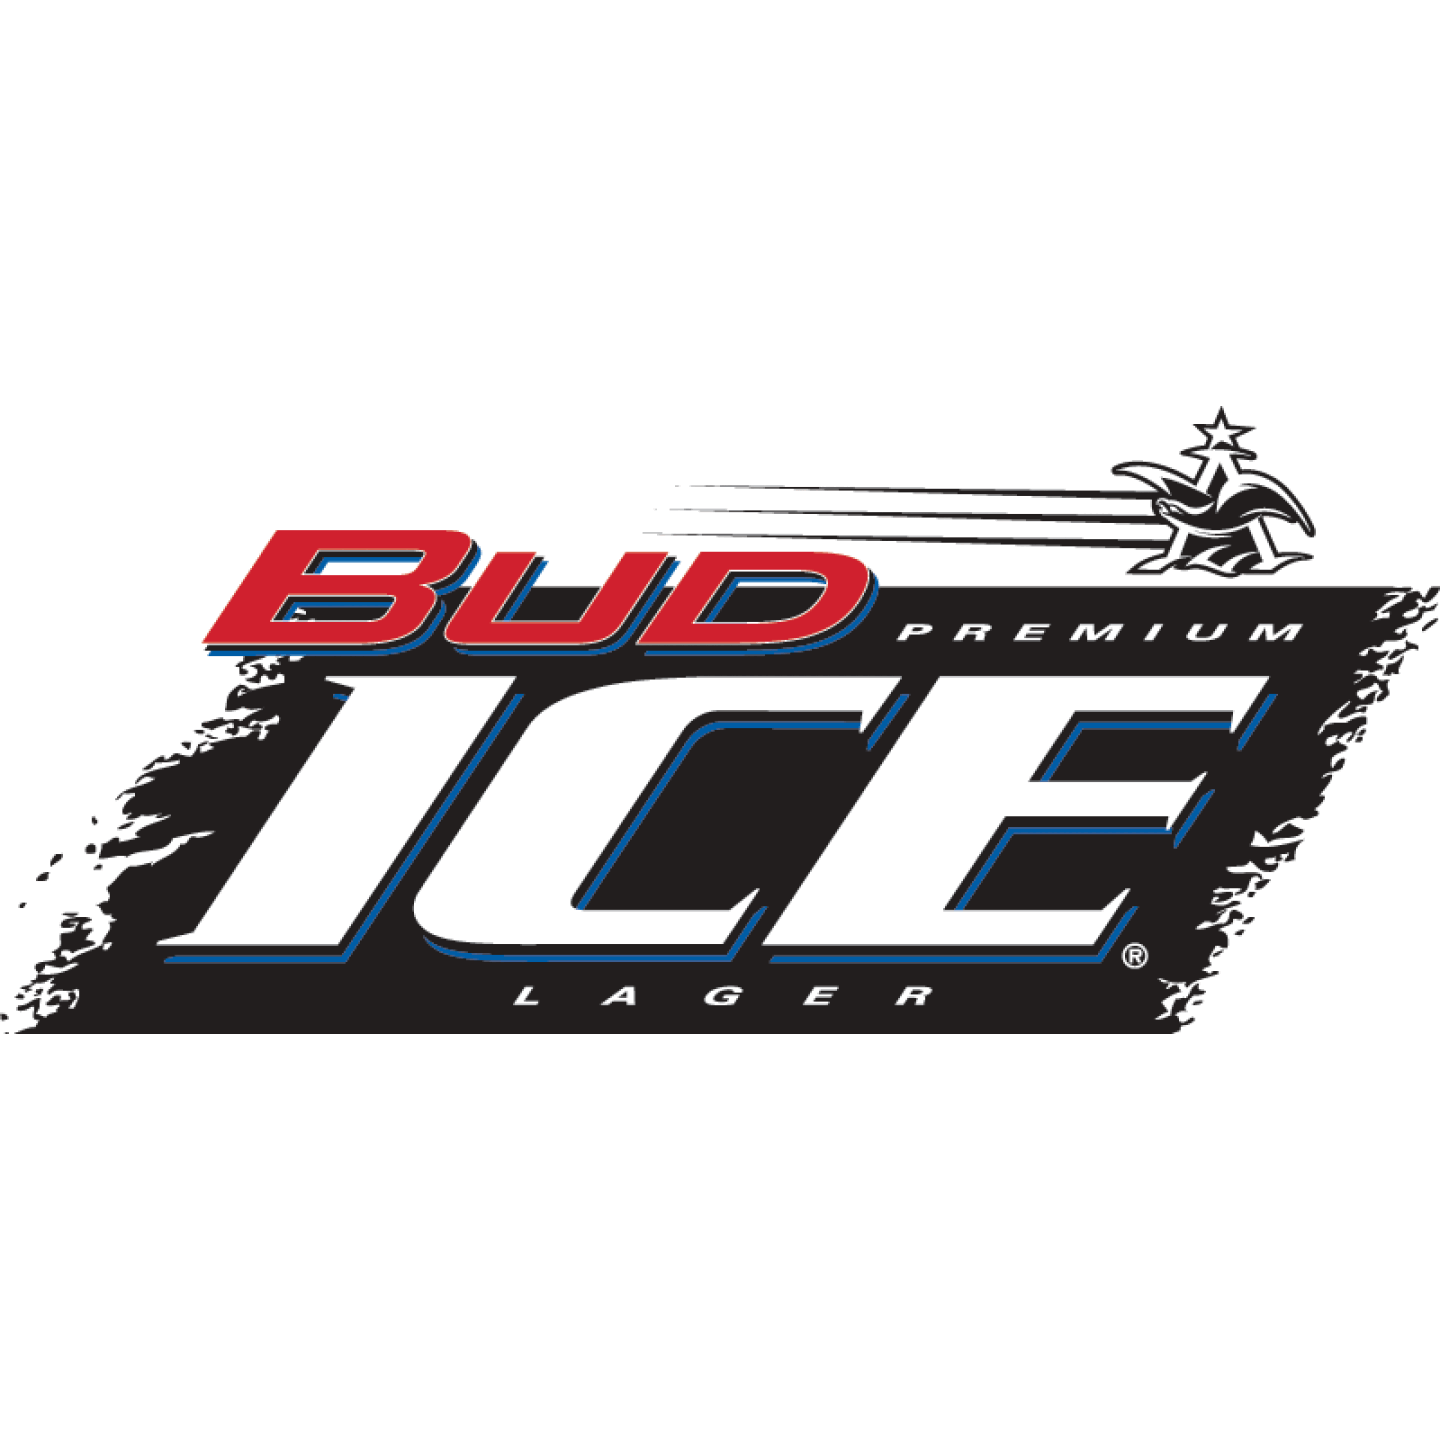 Bud Ice Image 1